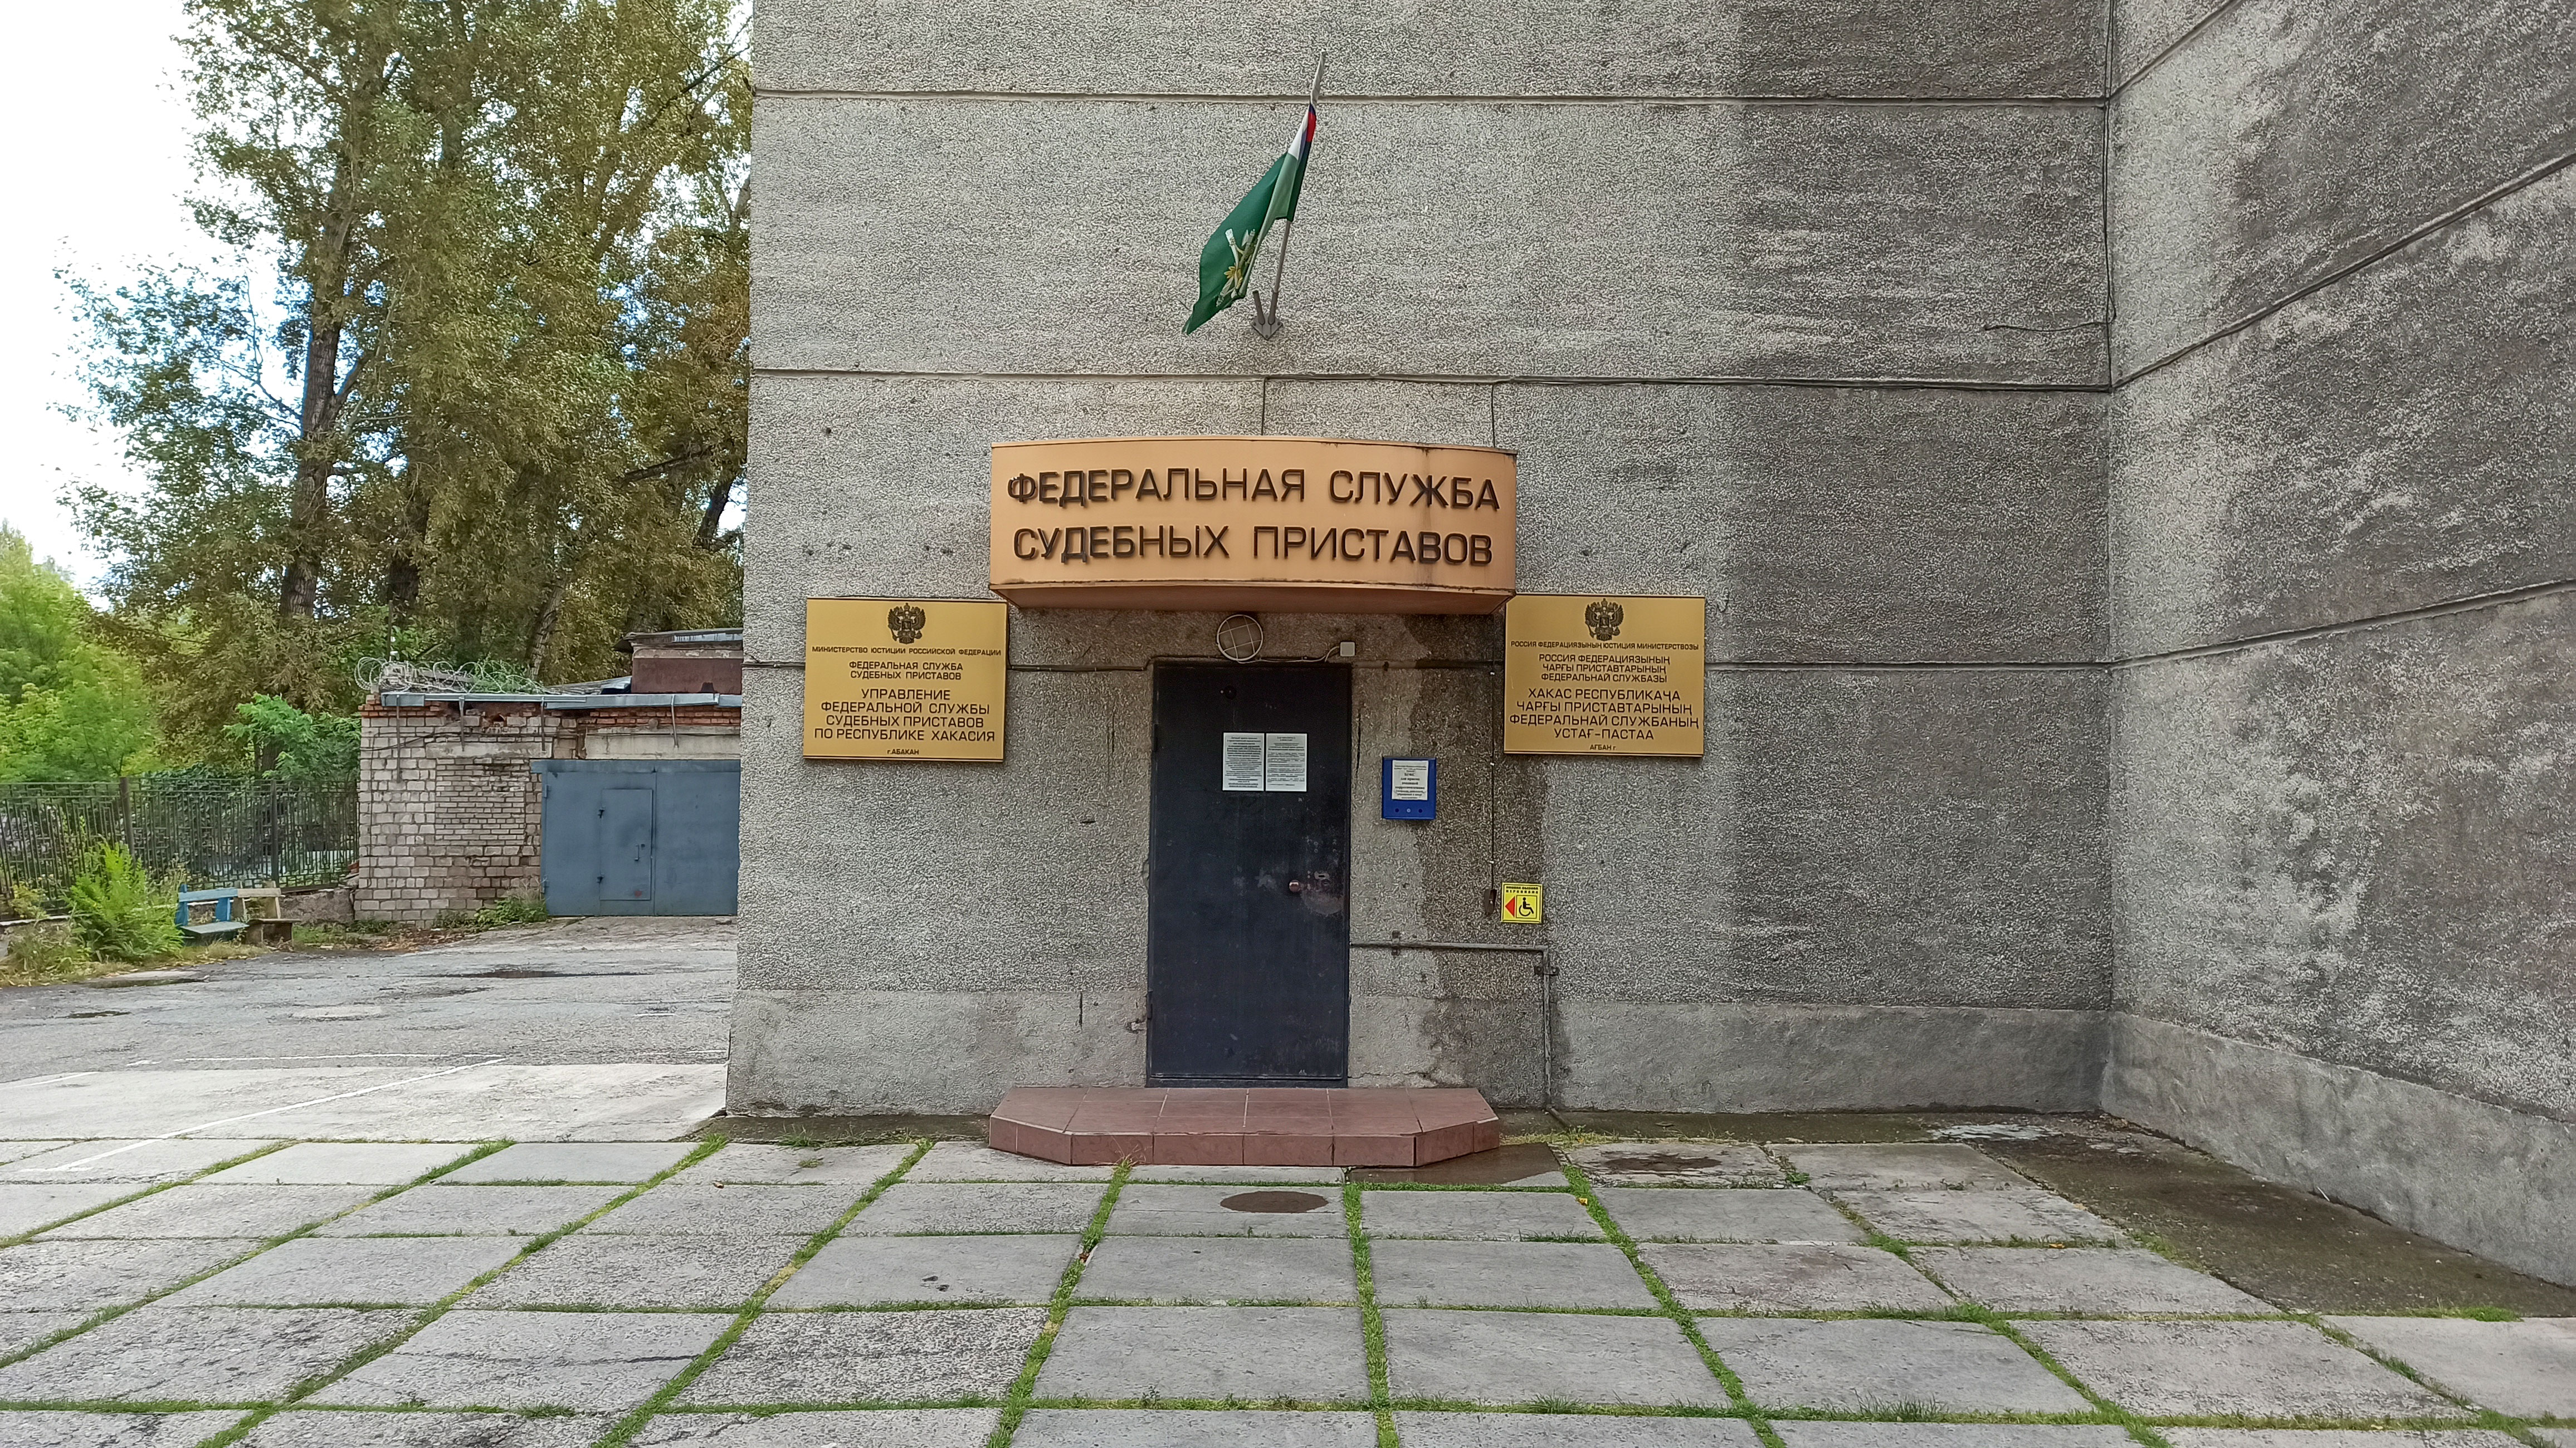 ФССП по Республике Хакасия, центральный вход.